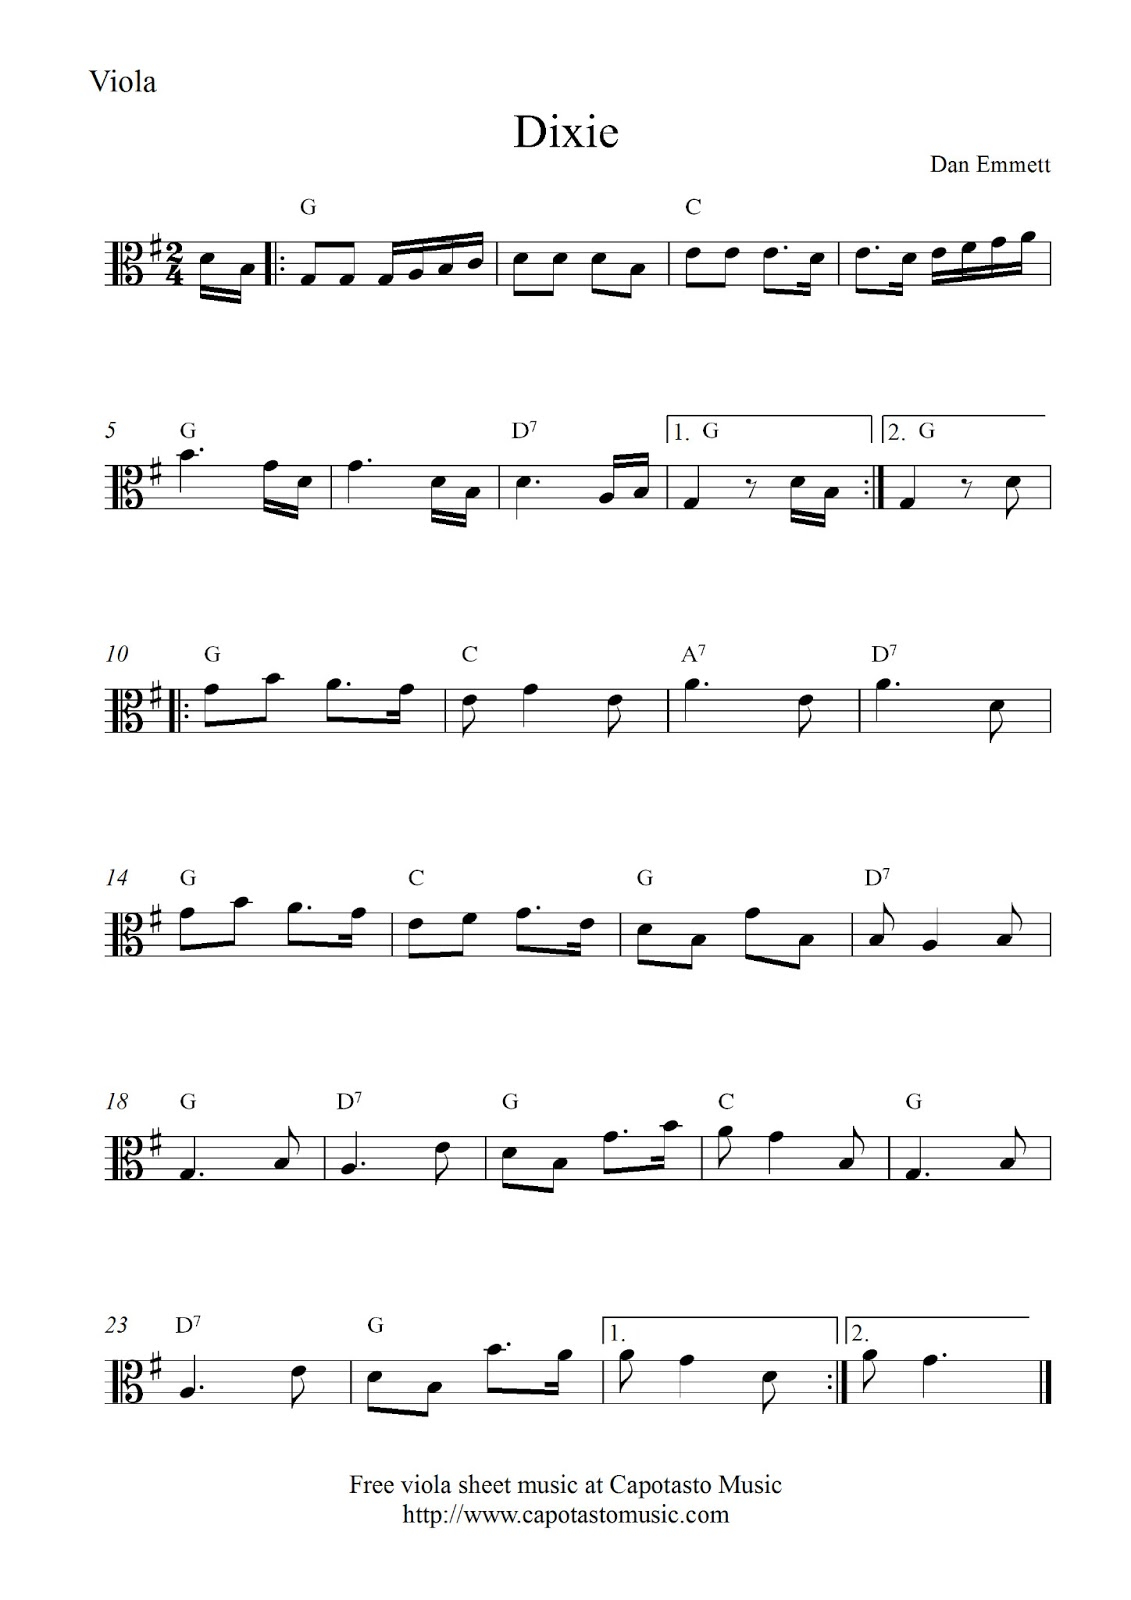 Free Viola Sheet Music, Dixie - Viola Sheet Music Free Printable